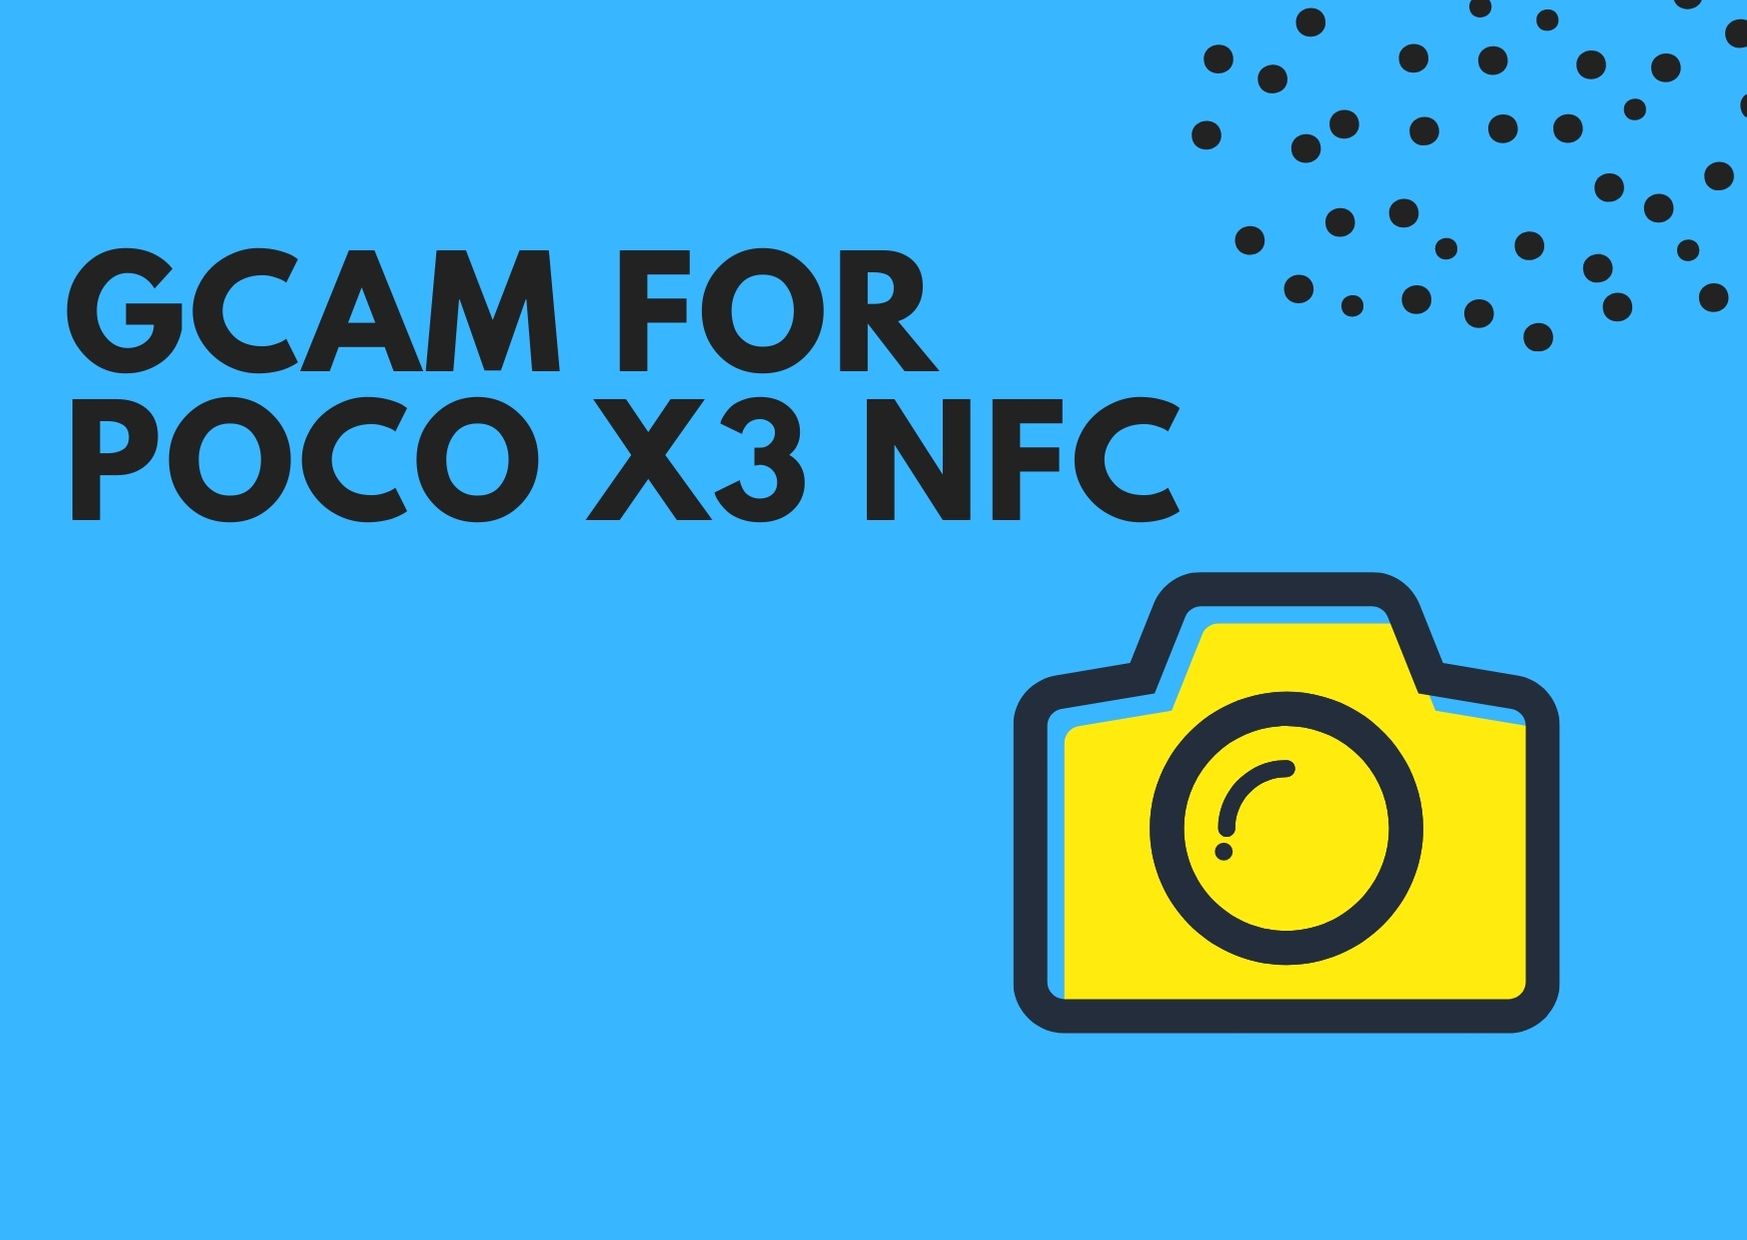 Download GCam APK for Poco X3 NFC